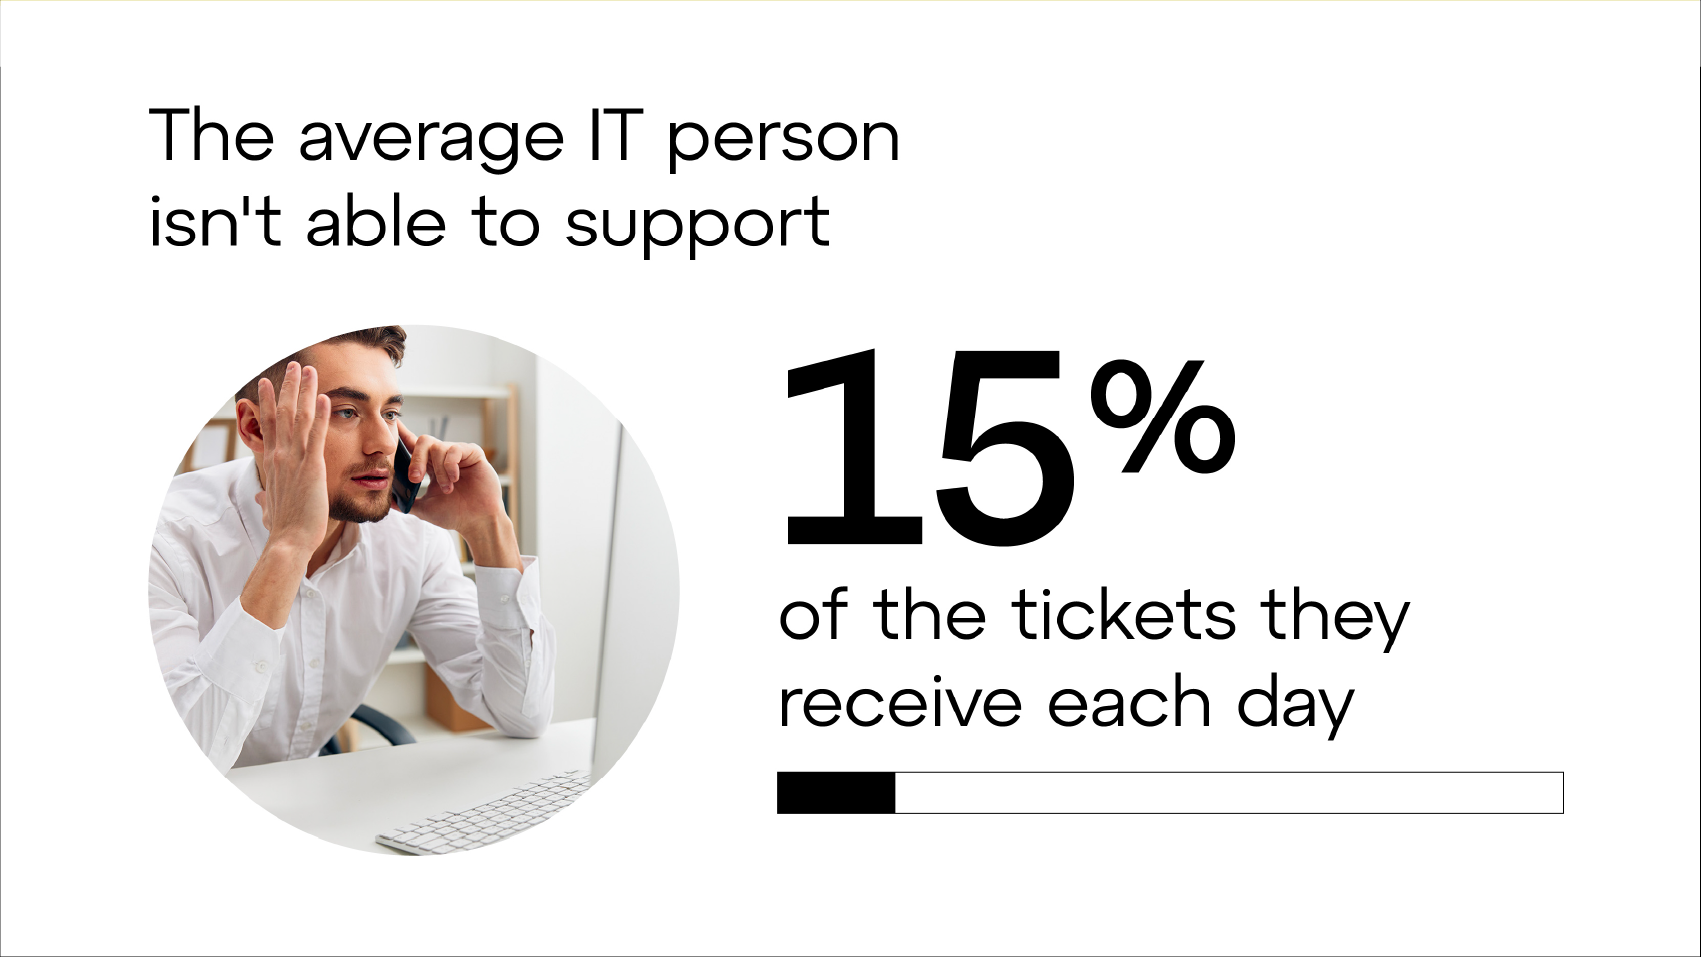 Il responsabile IT medio non è in grado di rispondere al 15% delle richieste di supporto che riceve ogni giorno.